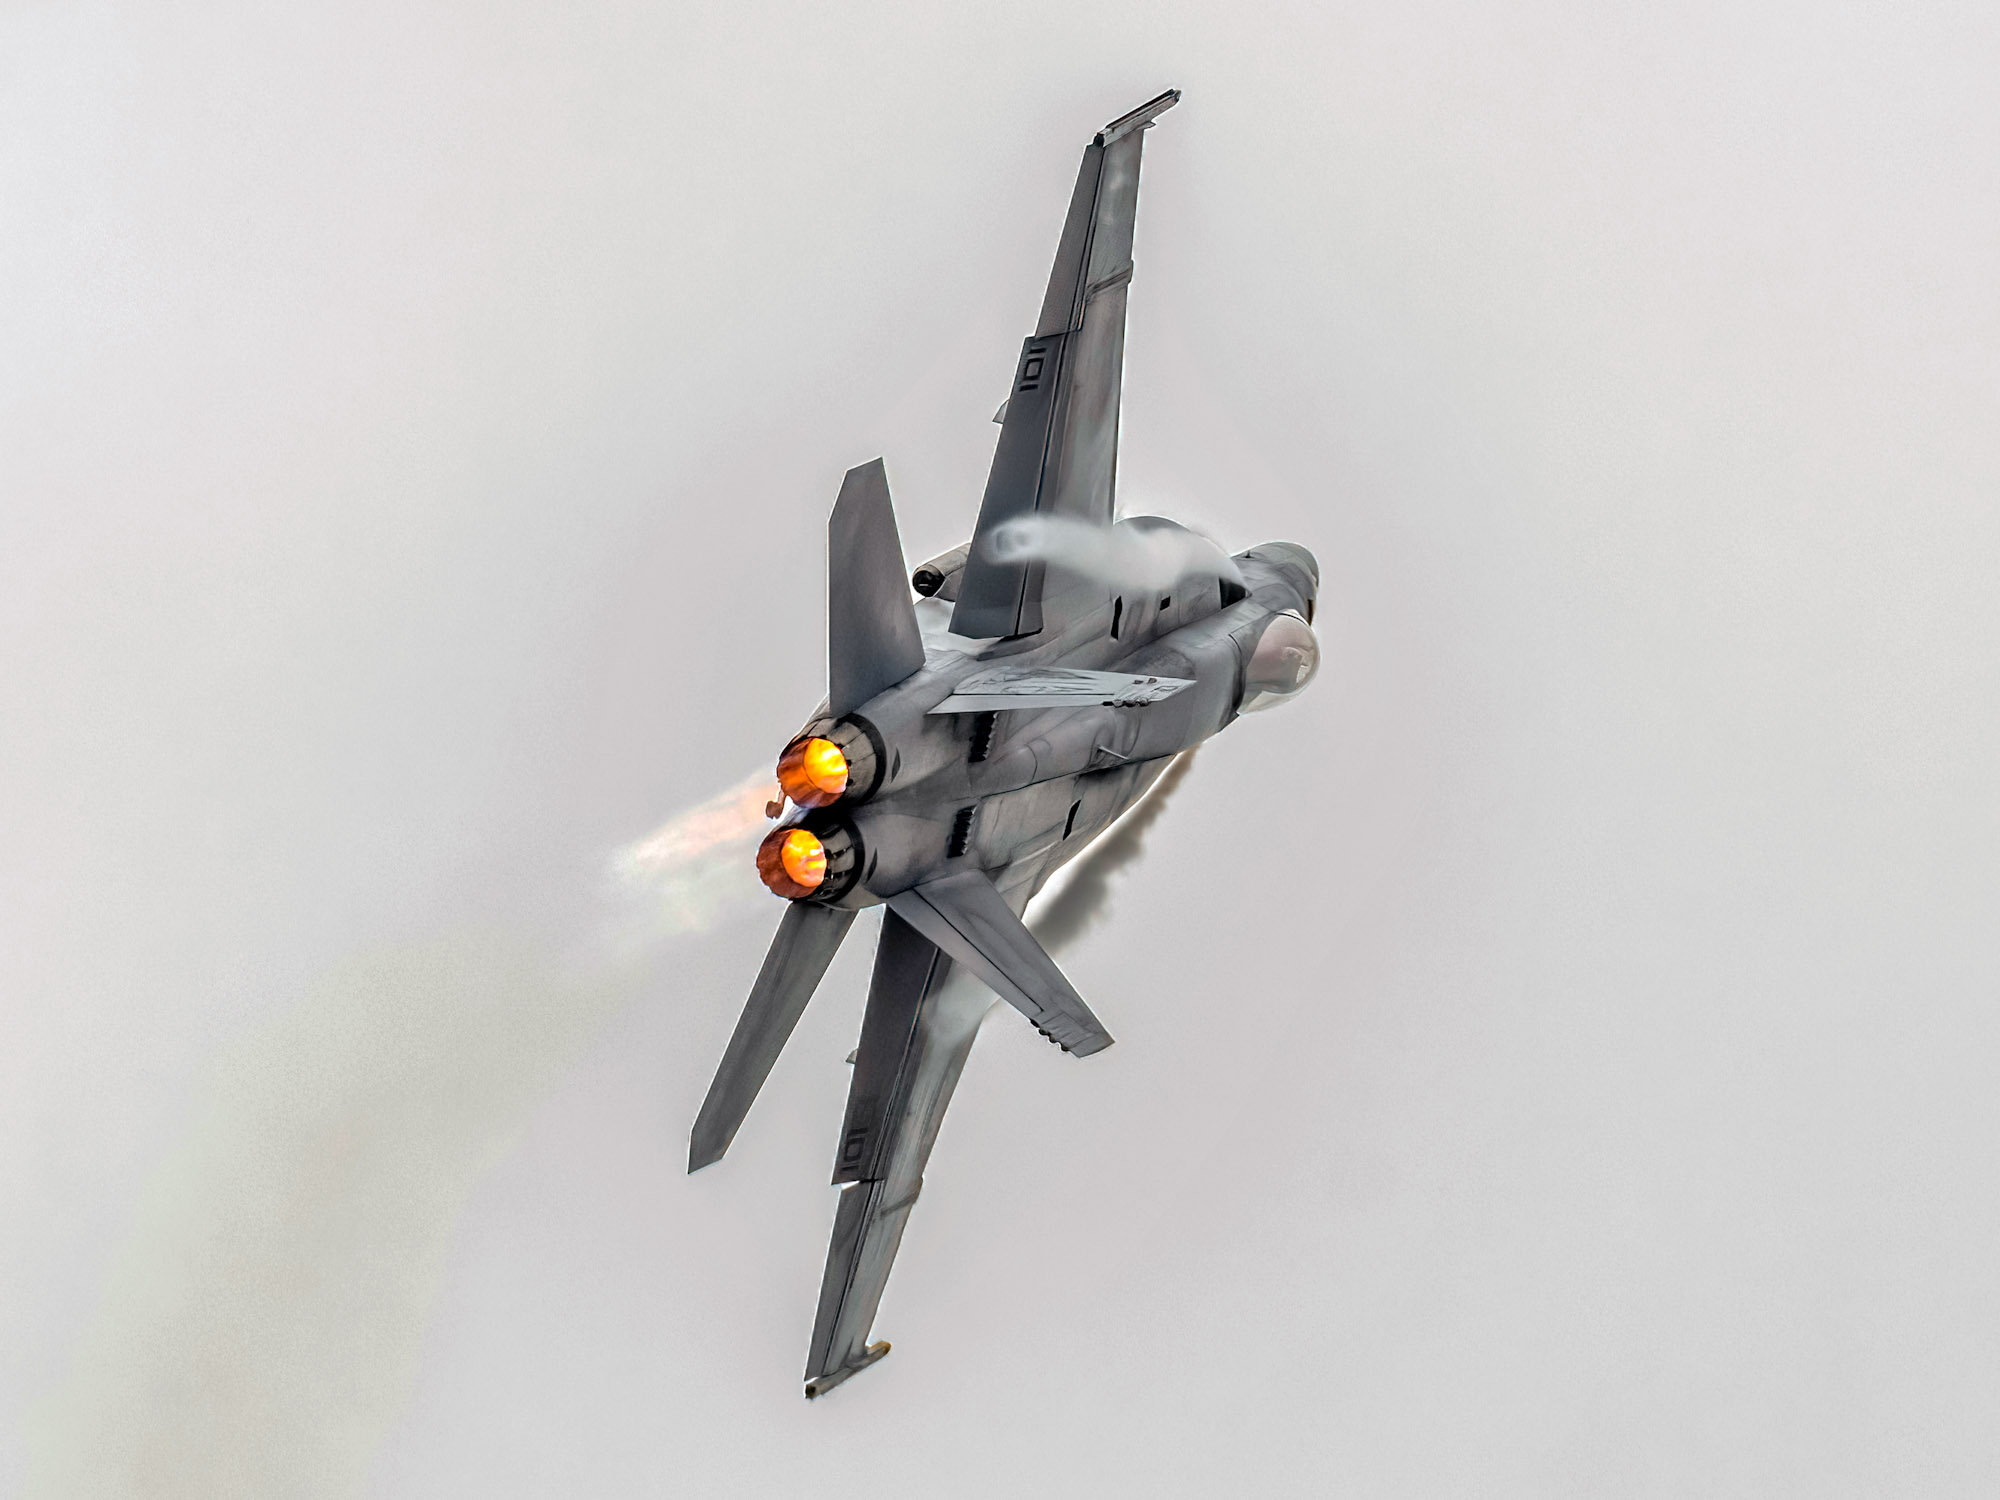 Le capitaine Chris « LIME » Swartz vole à bord d’un F/A-18E Super Hornet lors du spectacle aérien de London, en Ontario. PHOTO : Victor Juliet Aeroimaging, utilisation autorisée 